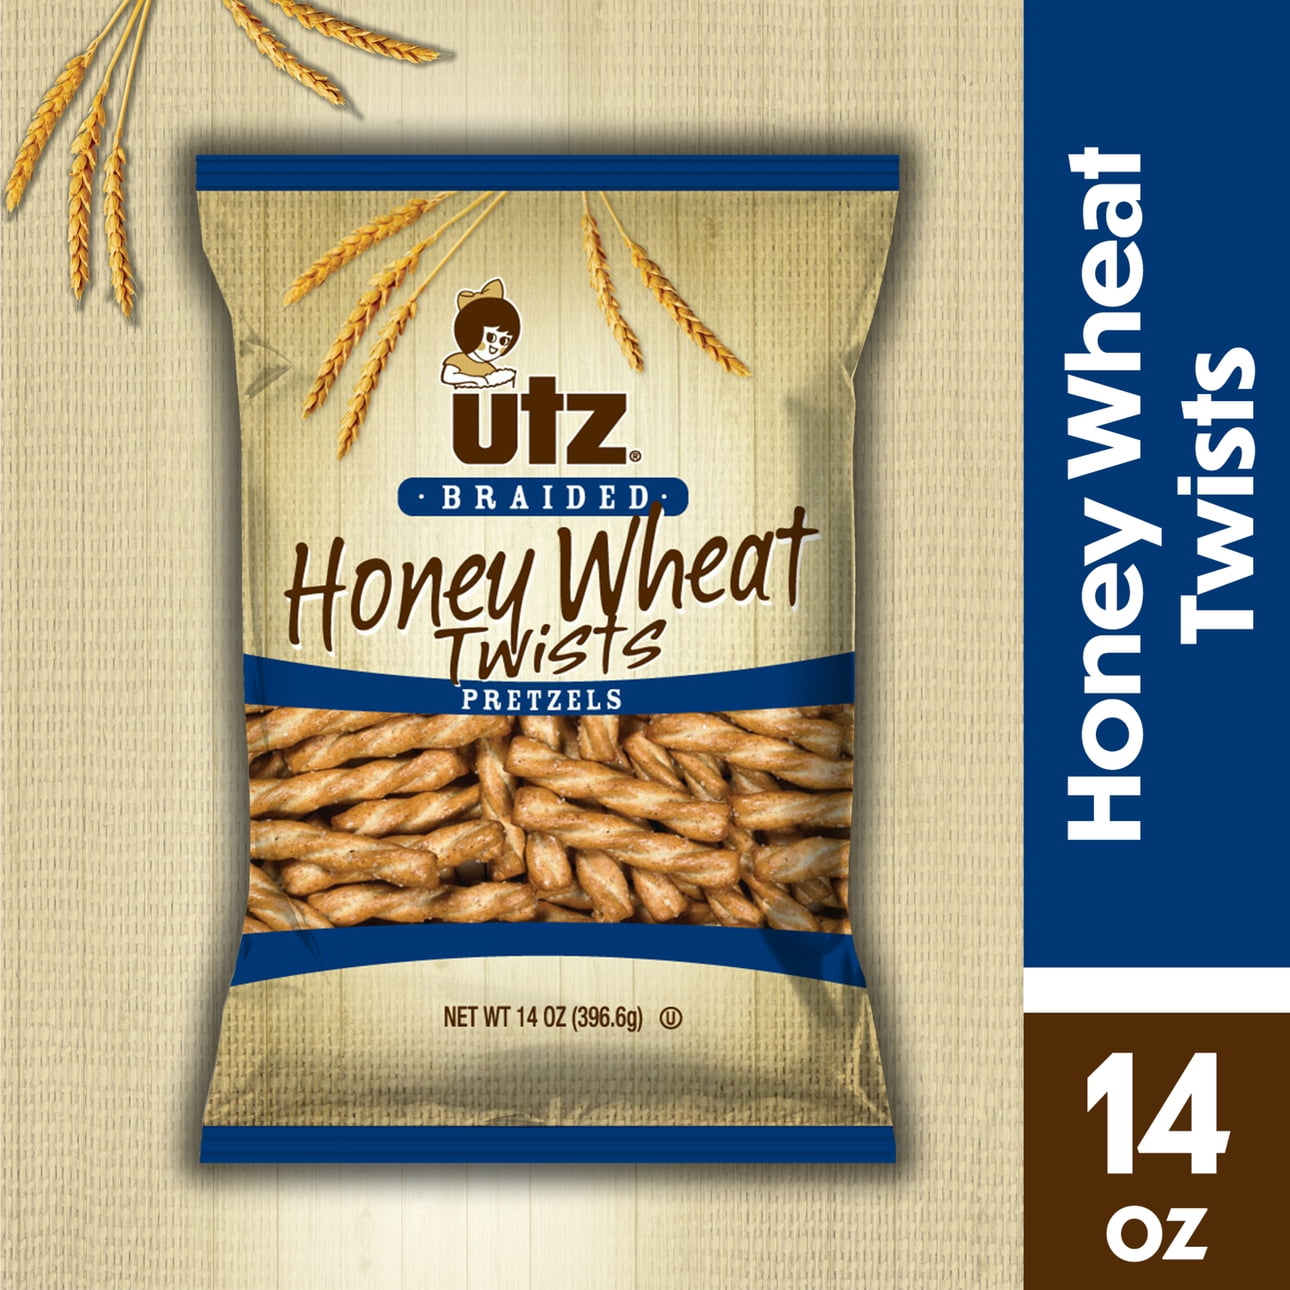 14 oz Utz Braided Honey Wheat Twists Pretzels